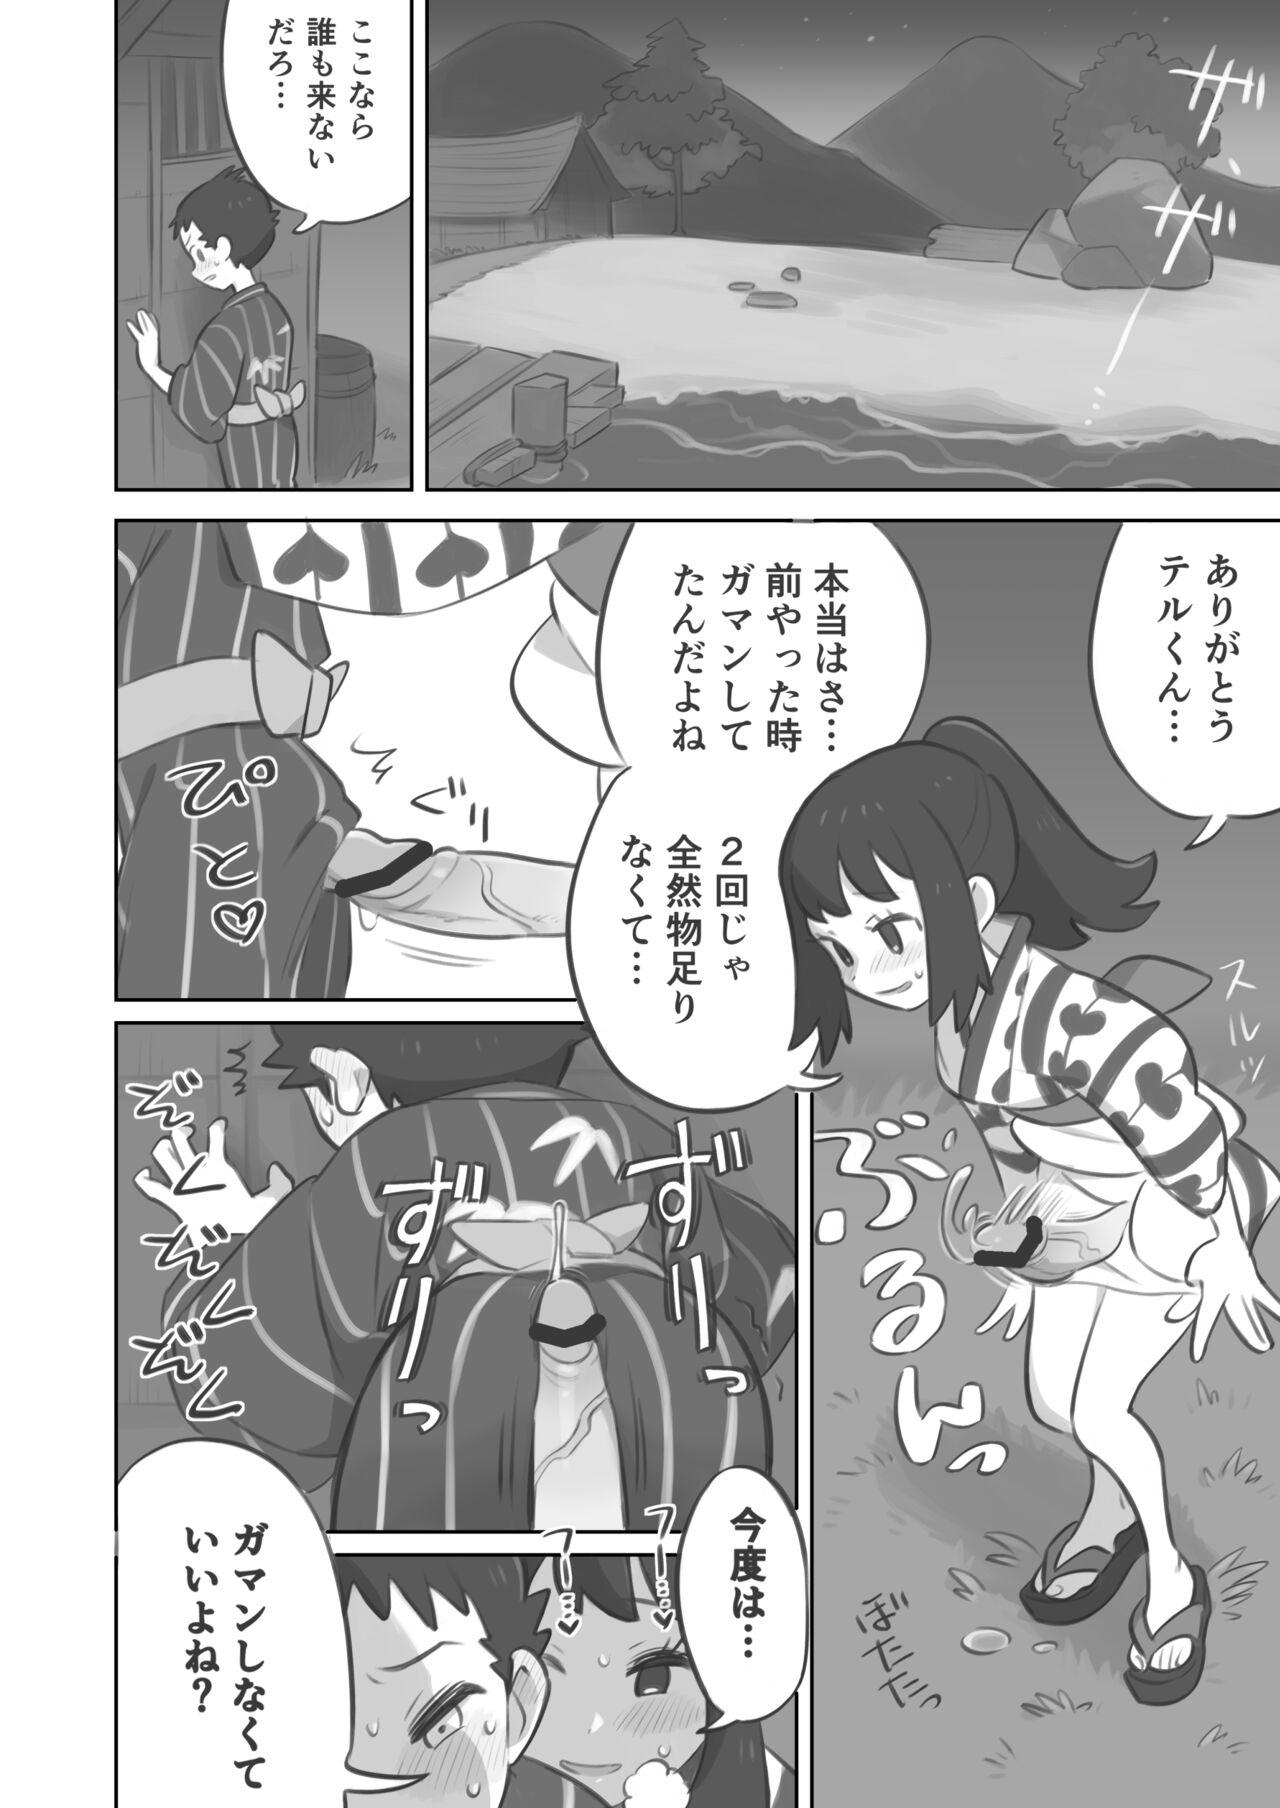 Cornudo Futanari shujinkō-chan ga Teru senpai o horu manga 2 - Pokemon | pocket monsters Bokep - Page 6